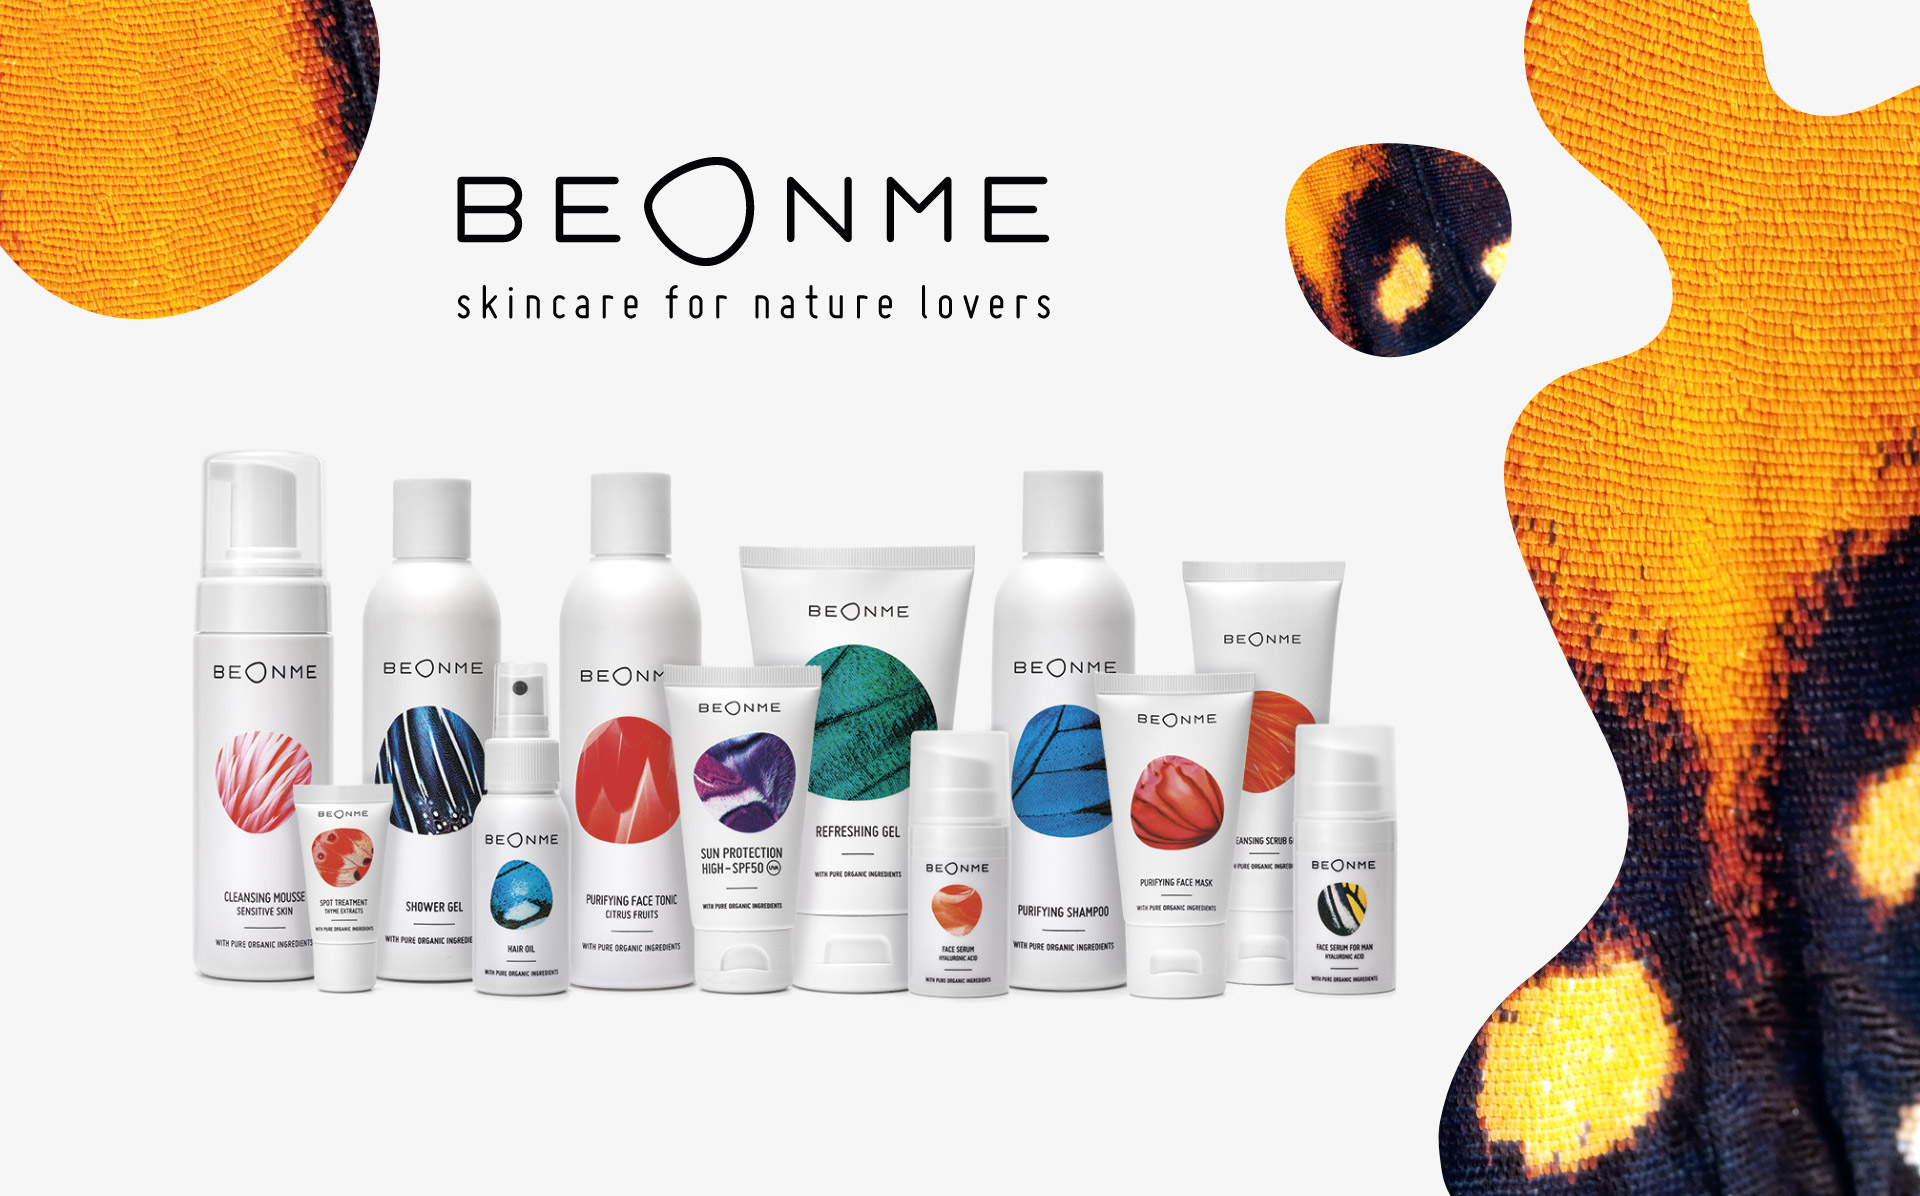 BeOnMe produse cosmetice organice ce contin doar ingrediente vegane si nu contin componente sintetice.